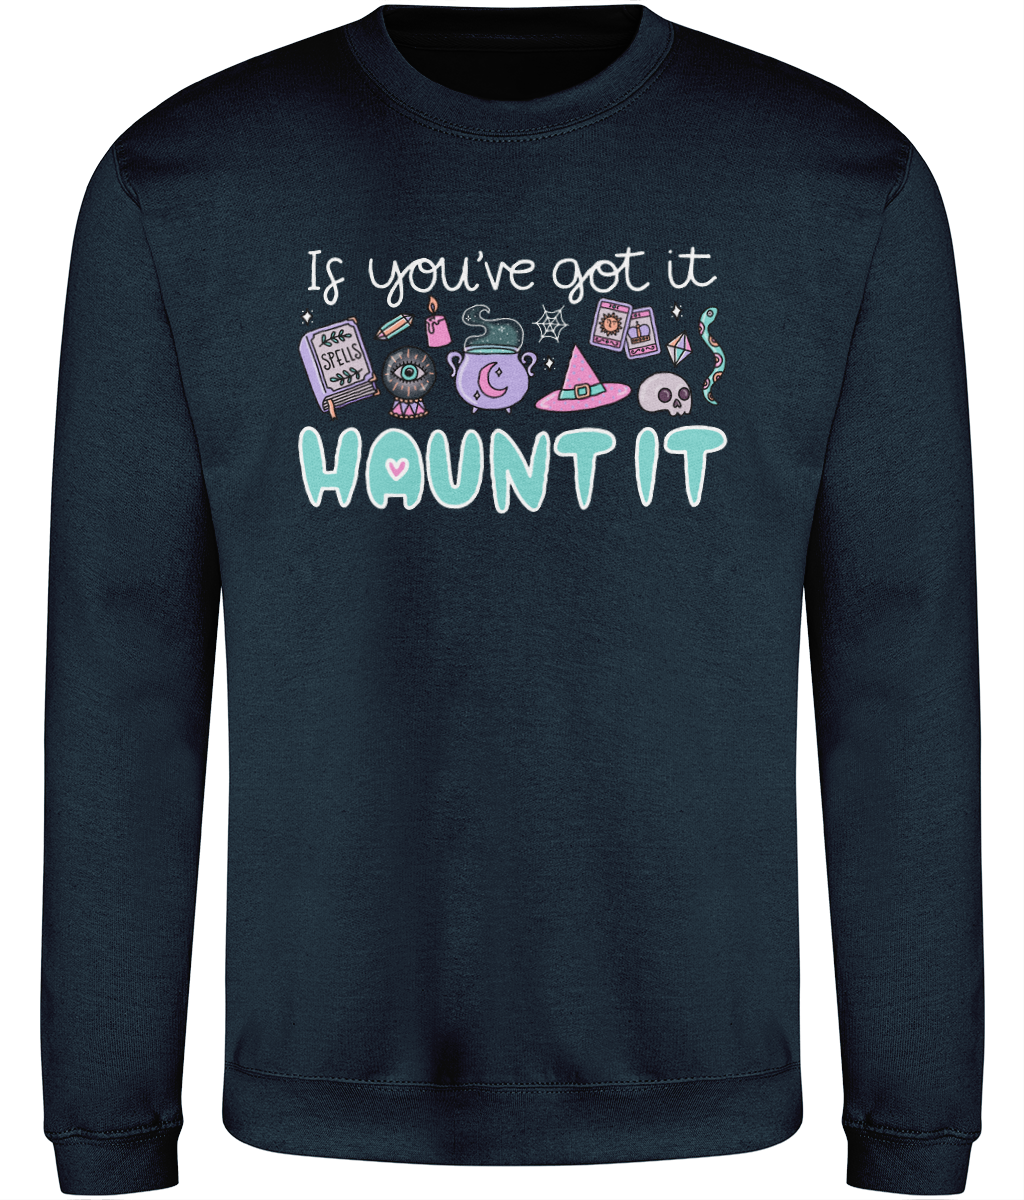 Spellbound Sweatshirt - If you've got it...haunt it